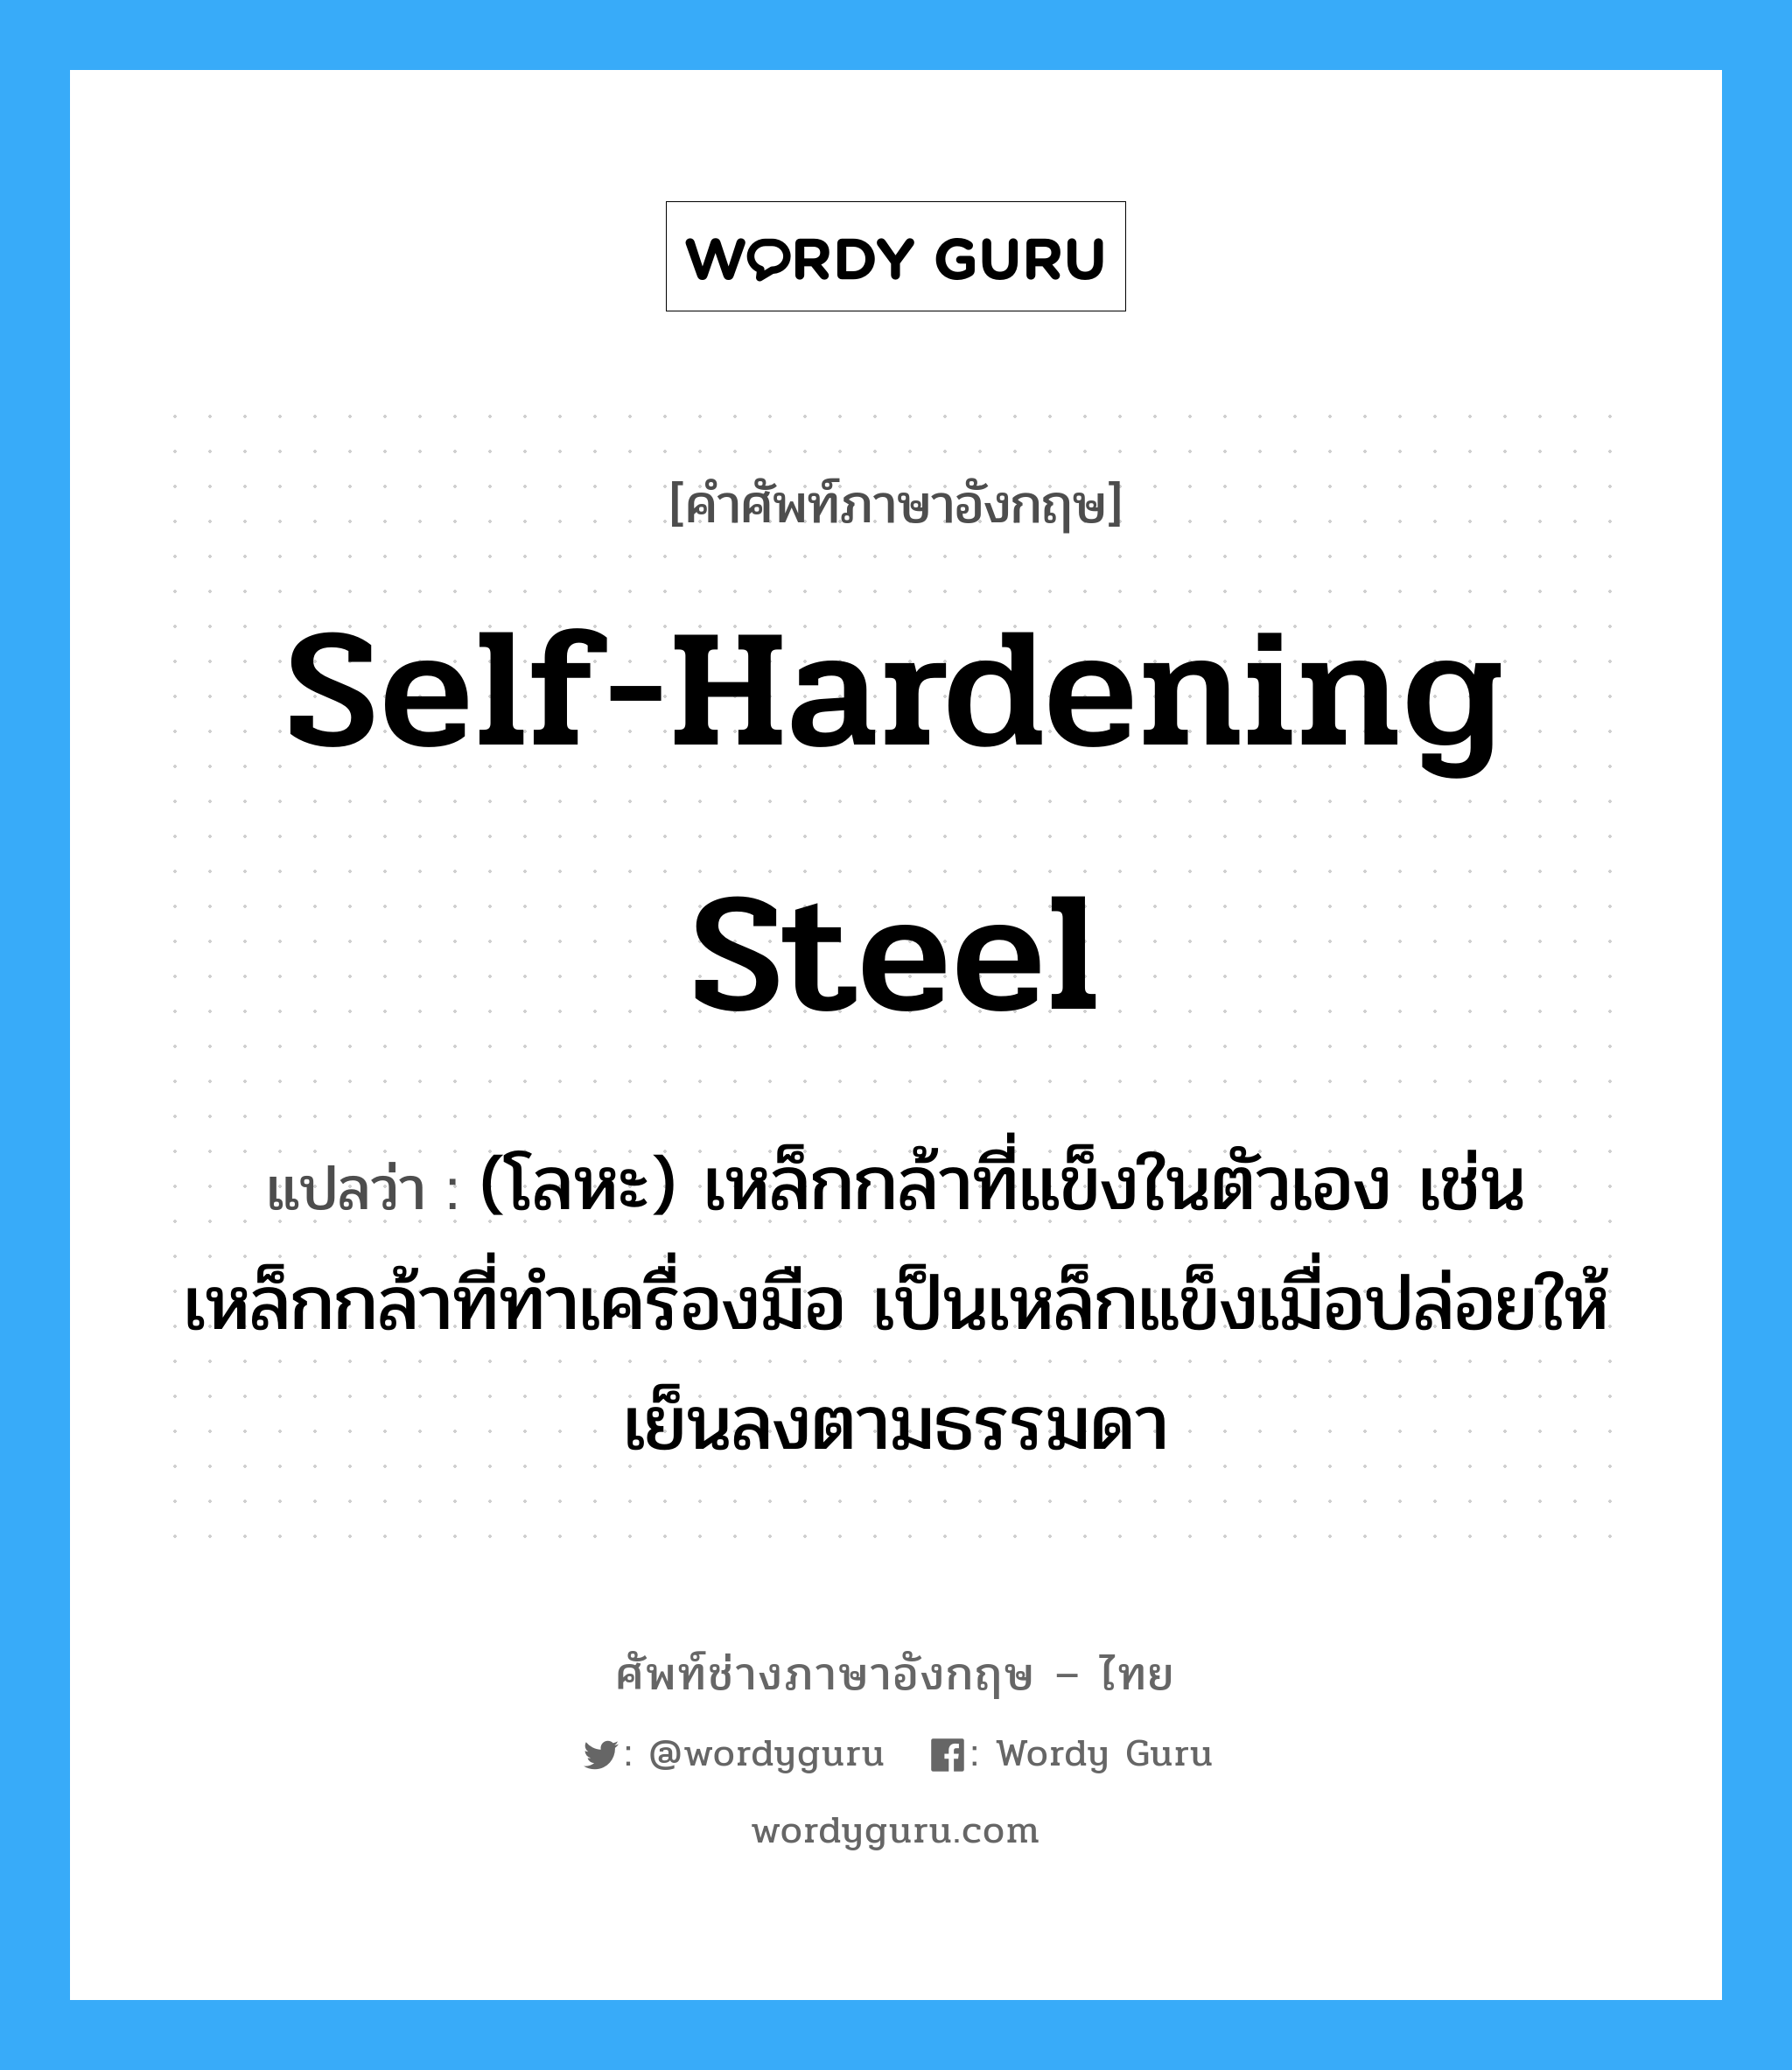 self-hardening steel แปลว่า?, คำศัพท์ช่างภาษาอังกฤษ - ไทย self-hardening steel คำศัพท์ภาษาอังกฤษ self-hardening steel แปลว่า (โลหะ) เหล็กกล้าที่แข็งในตัวเอง เช่น เหล็กกล้าที่ทำเครื่องมือ เป็นเหล็กแข็งเมื่อปล่อยให้เย็นลงตามธรรมดา